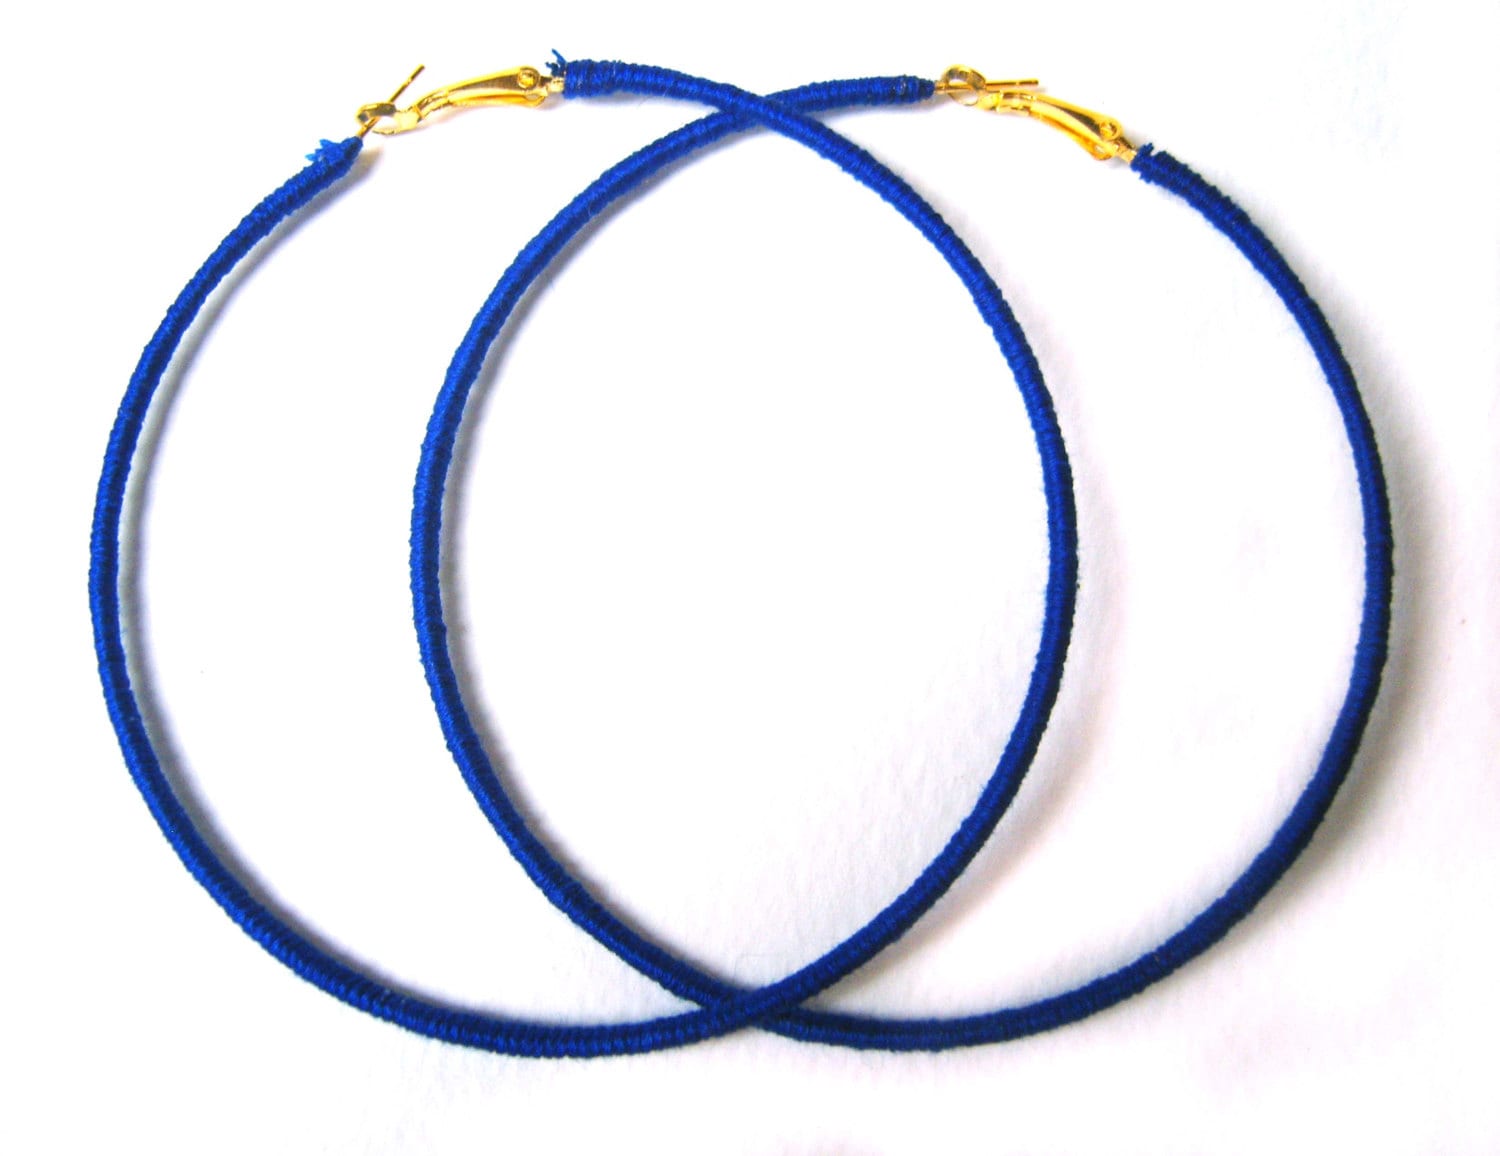 Electric Blue Hoop Earring Supplies, 1 Pair, Blue Acetate Hoops, Acrylic Earrings, Flat Thin Hoops, Jewelry Making Findings, EAR086-30-U22 No